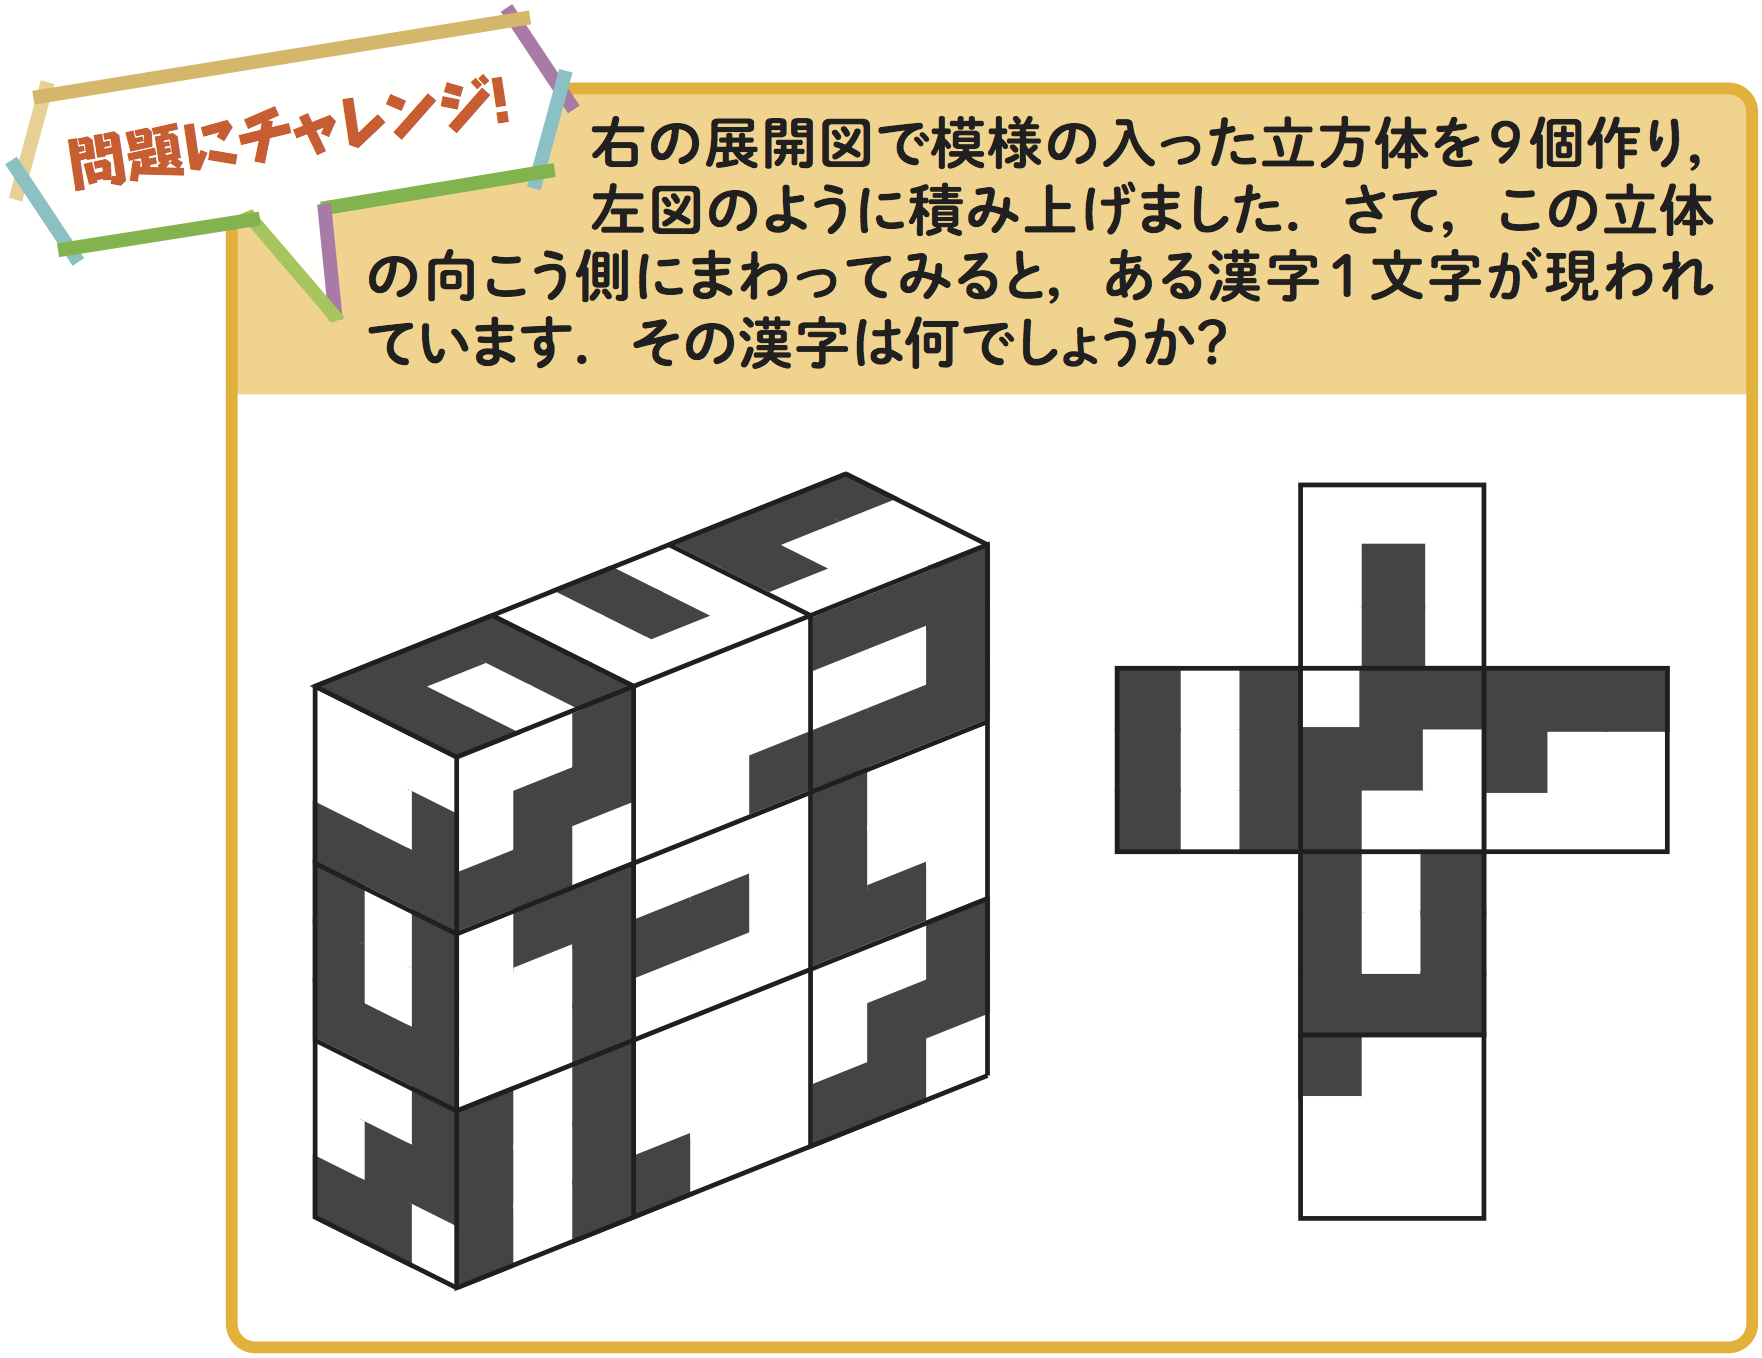 右図の展開図で模様の入った立方体を 9 個作り,左図のように積み上げました.さて,この立体 の向こう側にまわってみると,ある漢字 1 文字が現われ ています.その漢字は何でしょうか?